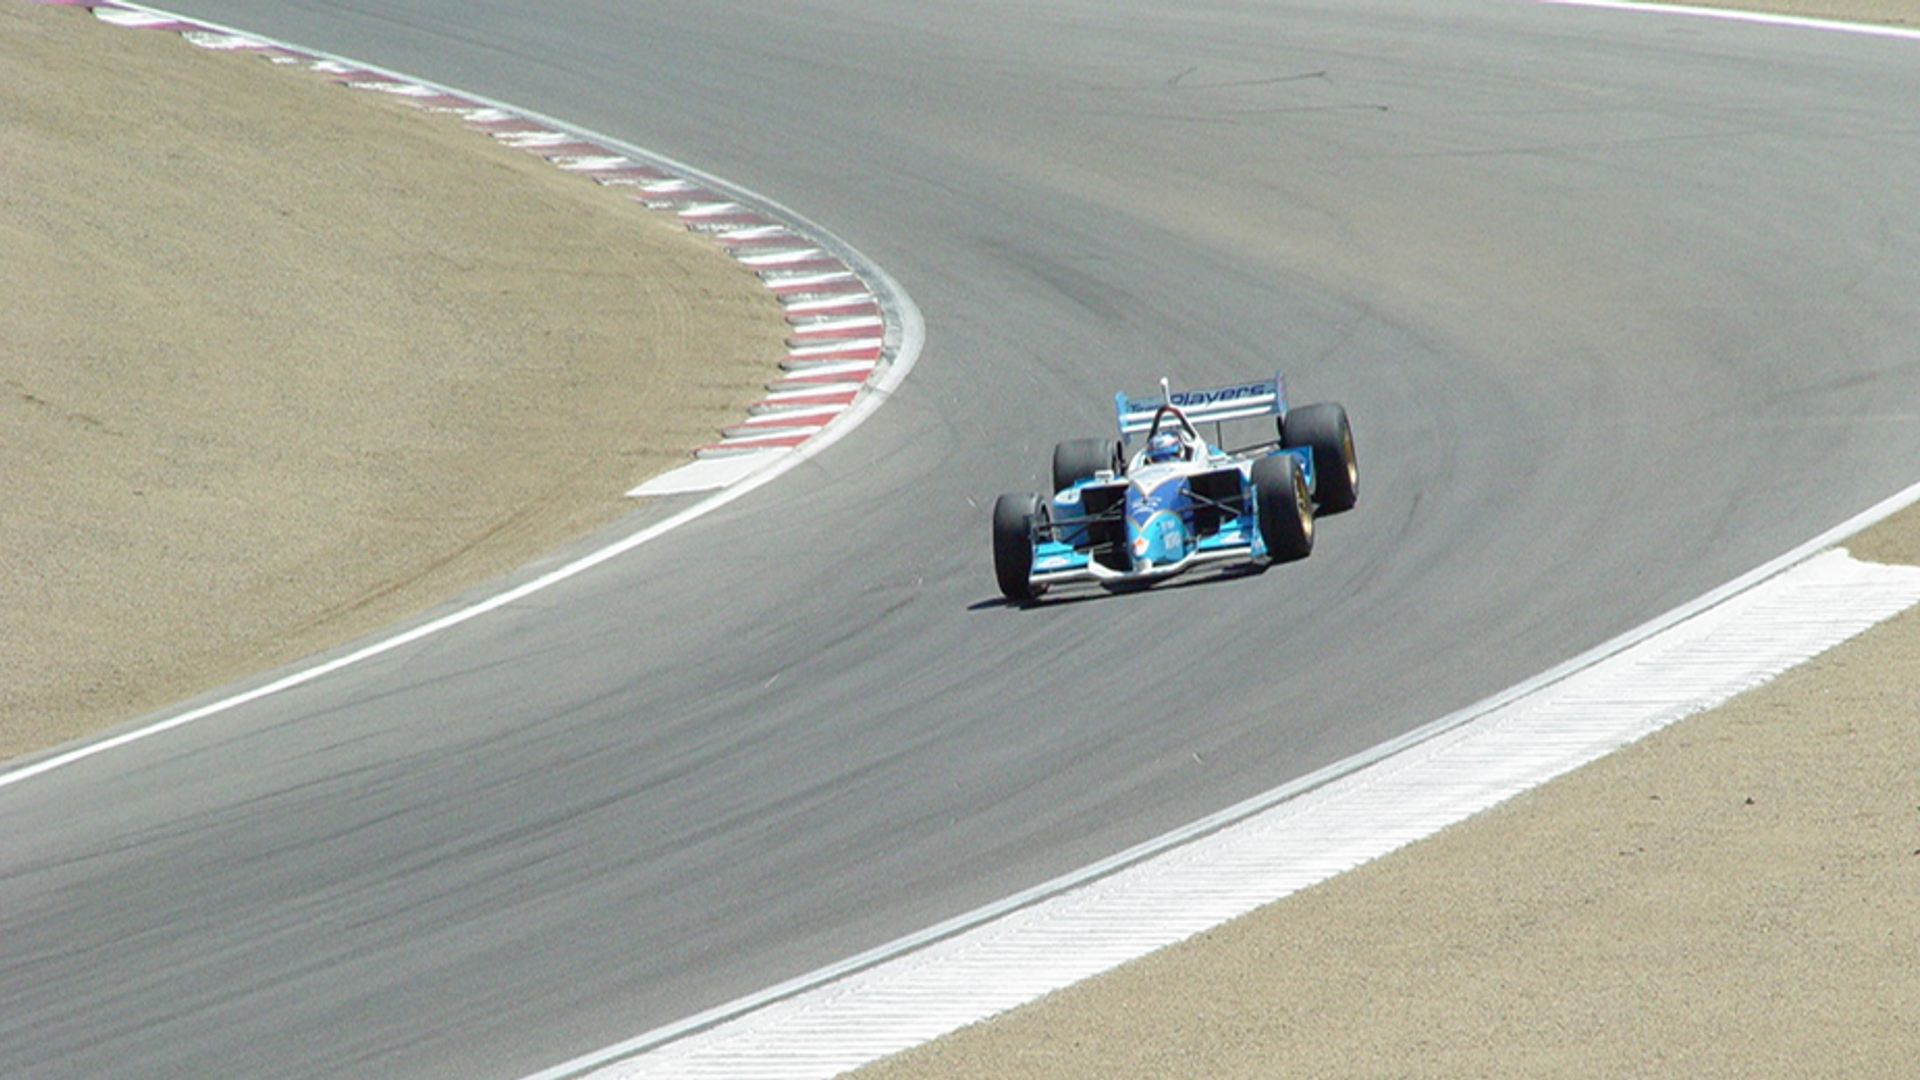 raceauto circuit 930x520